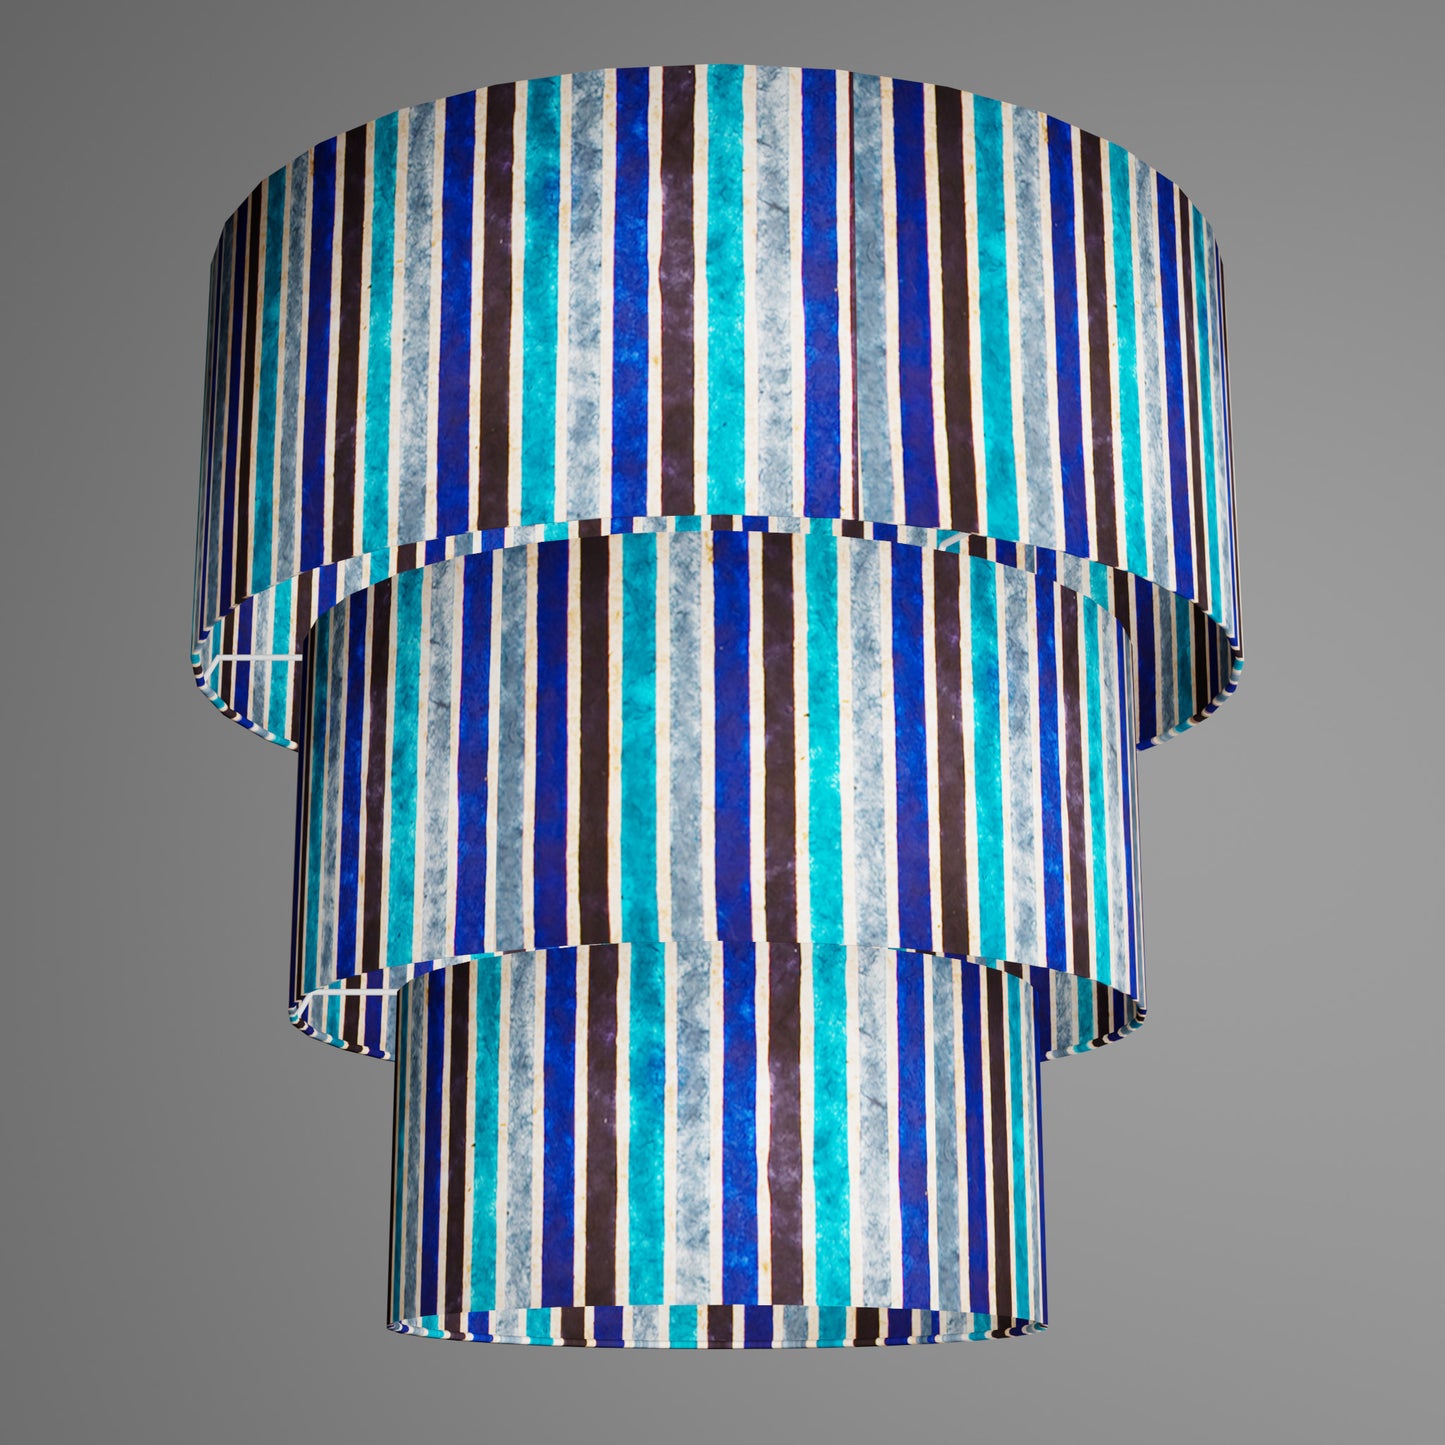 3 Tier Lamp Shade - P05 - Batik Stripes Blue, 50cm x 20cm, 40cm x 17.5cm & 30cm x 15cm